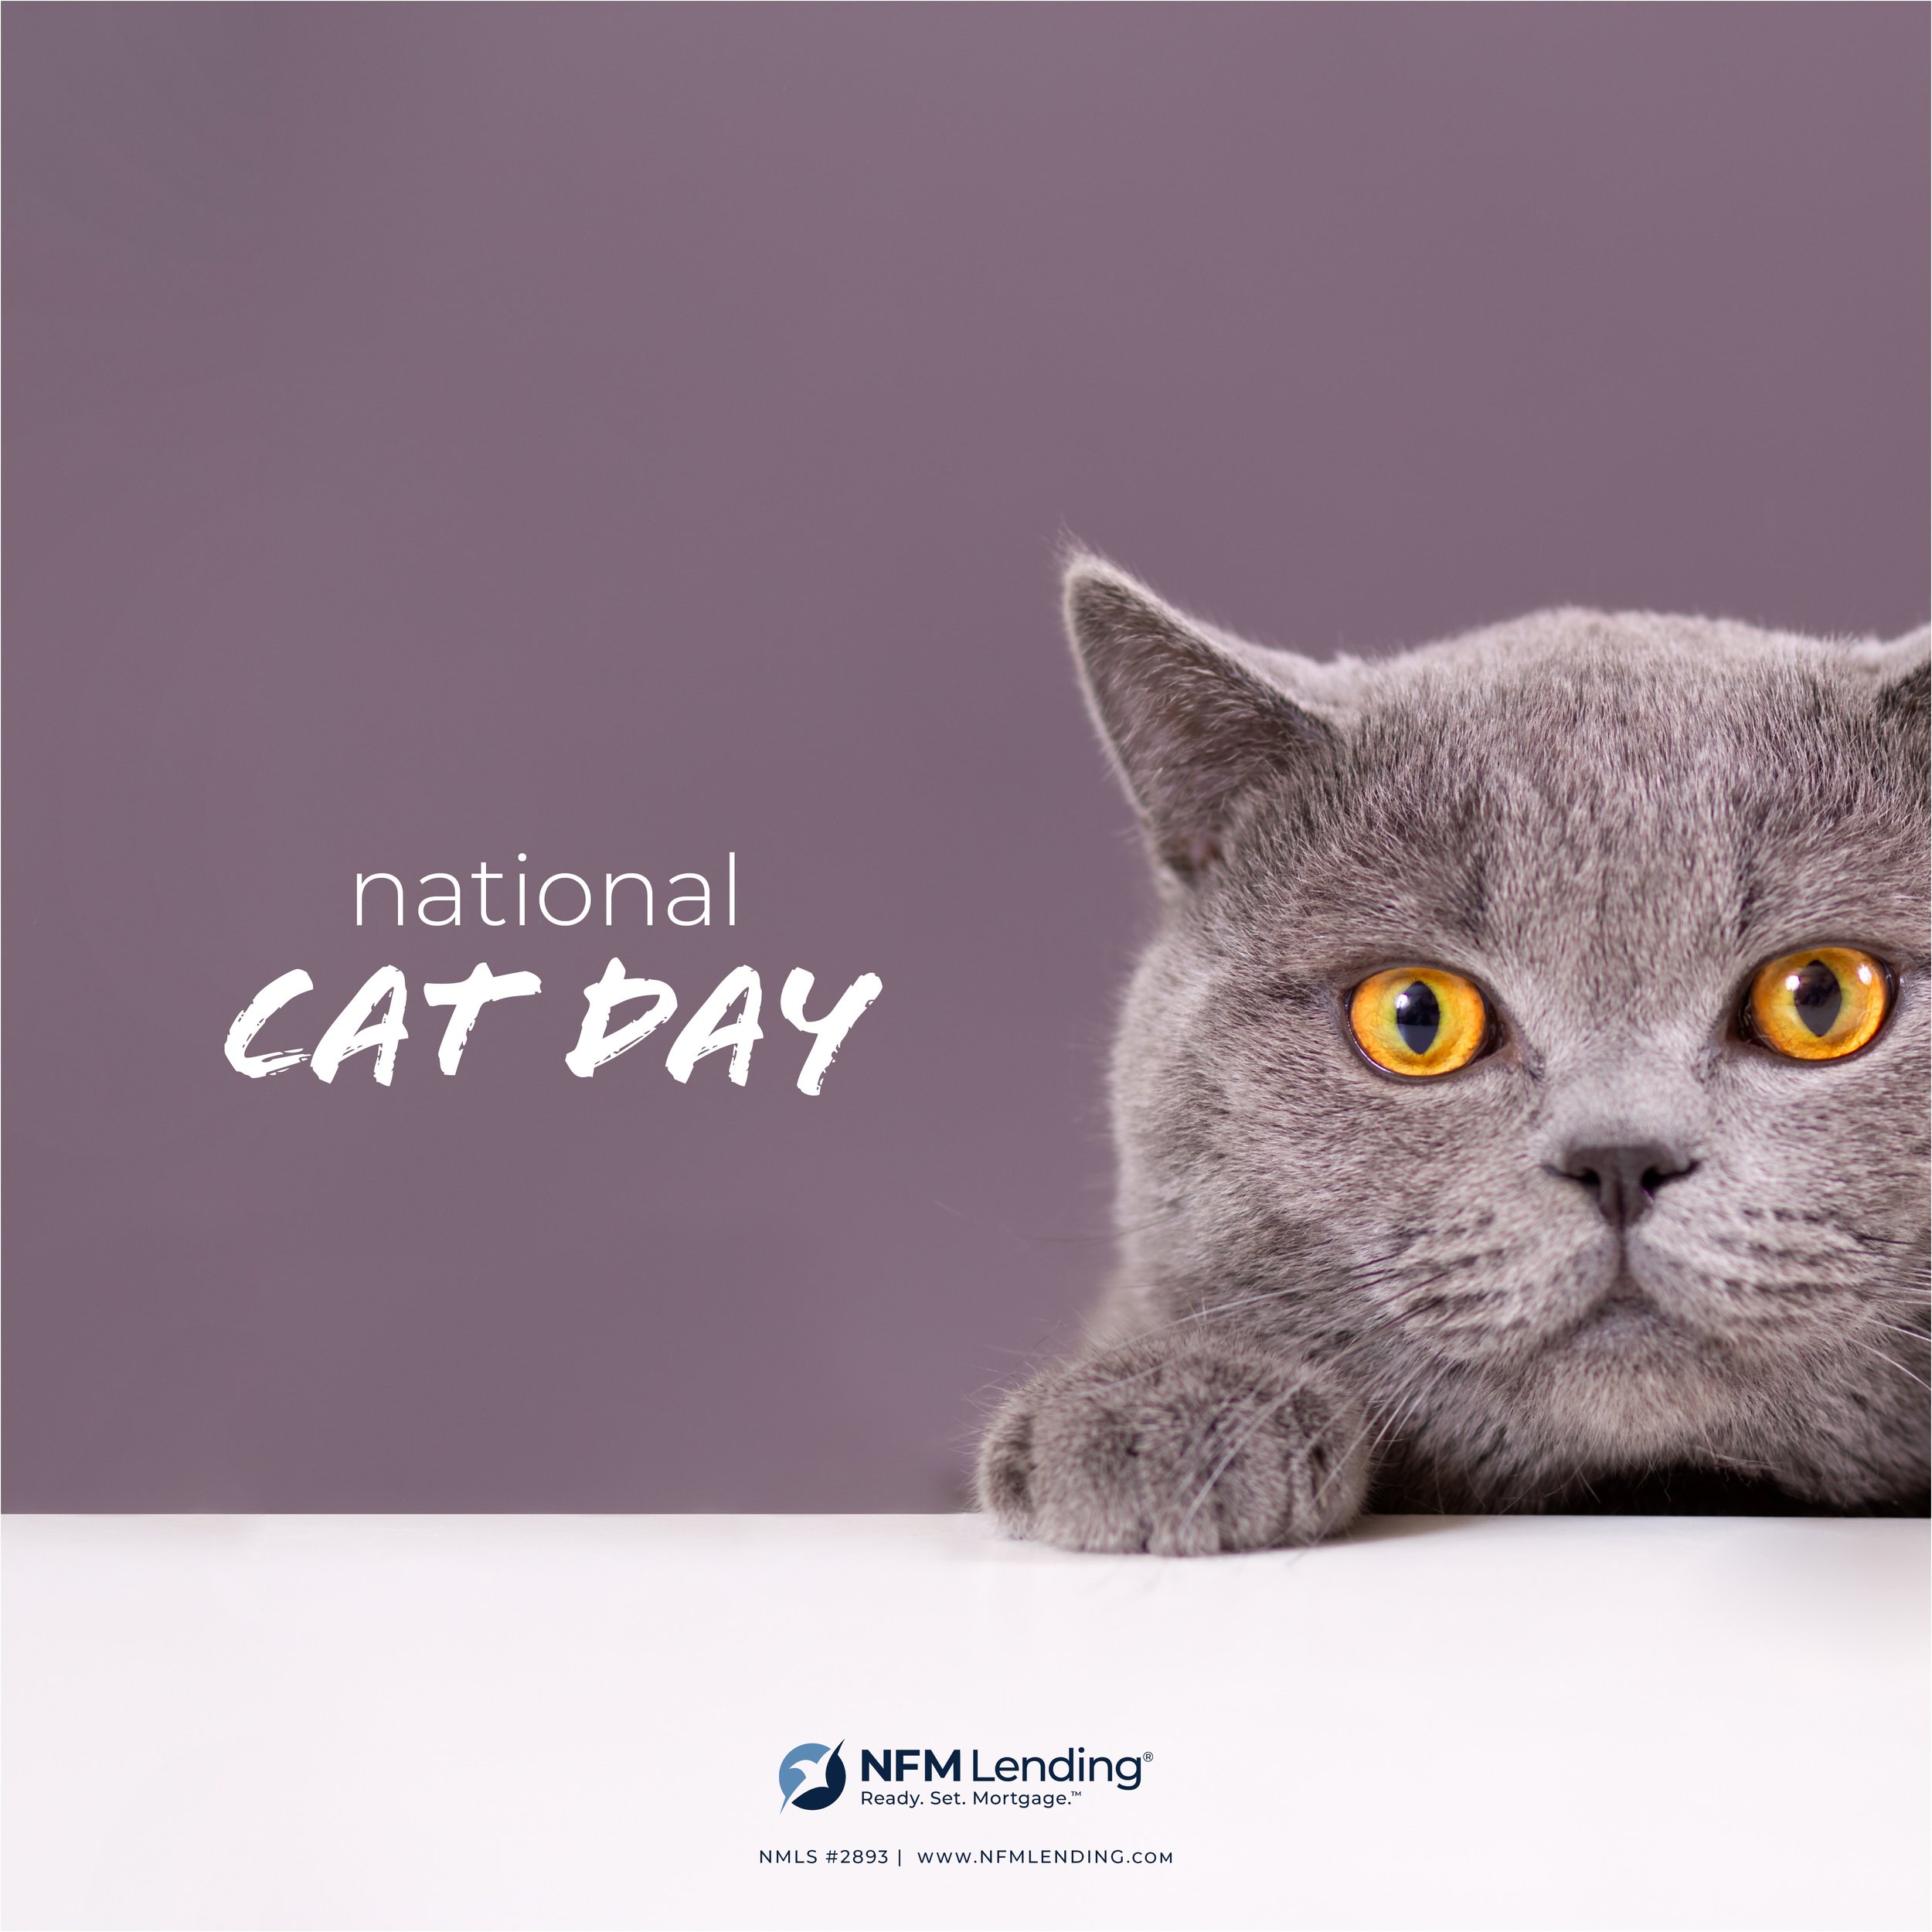 Cat Day_SocialMedia_10.2021_CORP.jpg